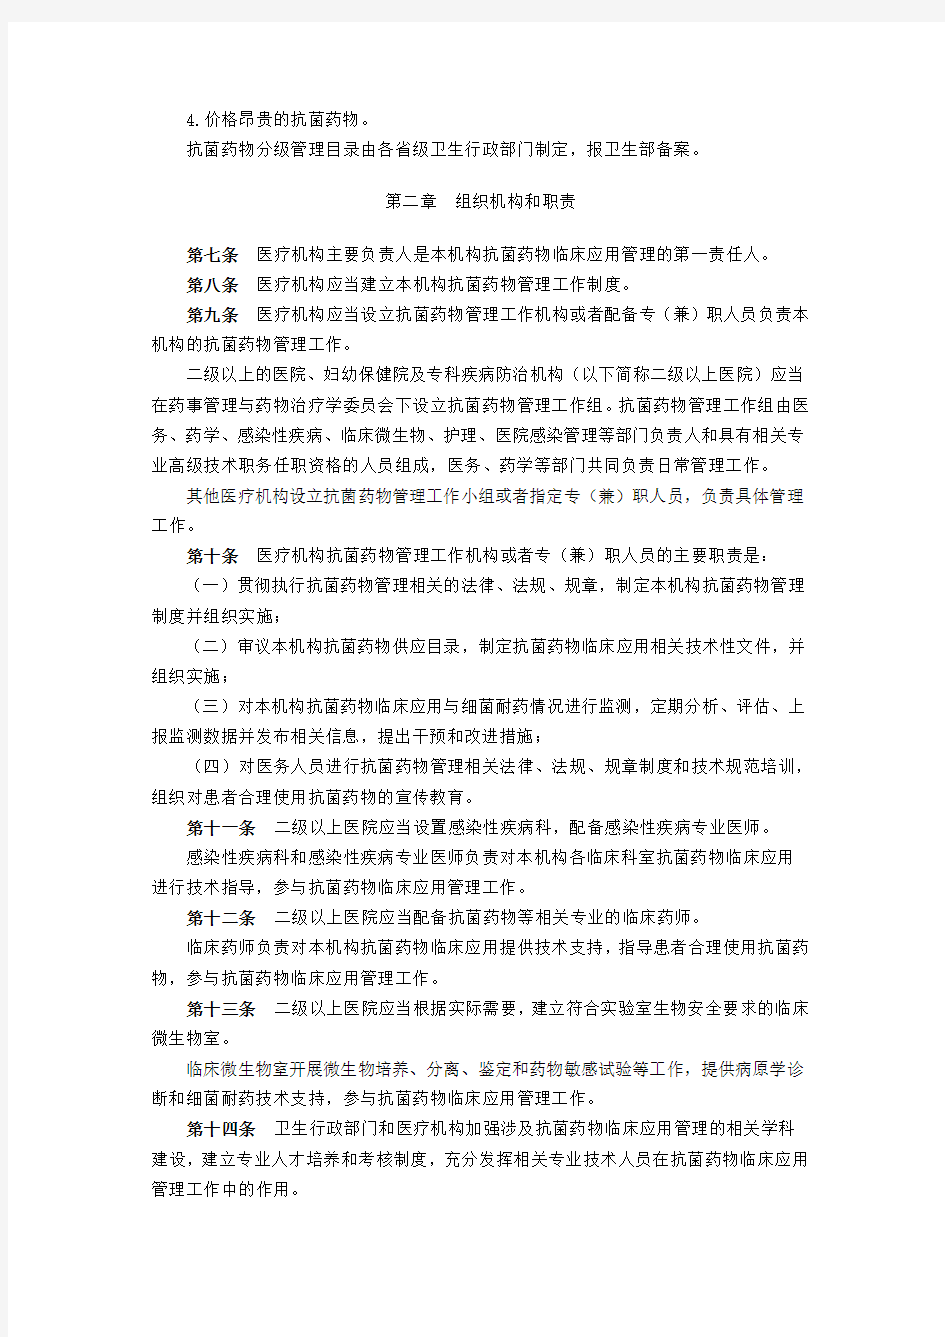 中华人民共和国卫生部令第84号《抗菌药物临床应用管理办法》